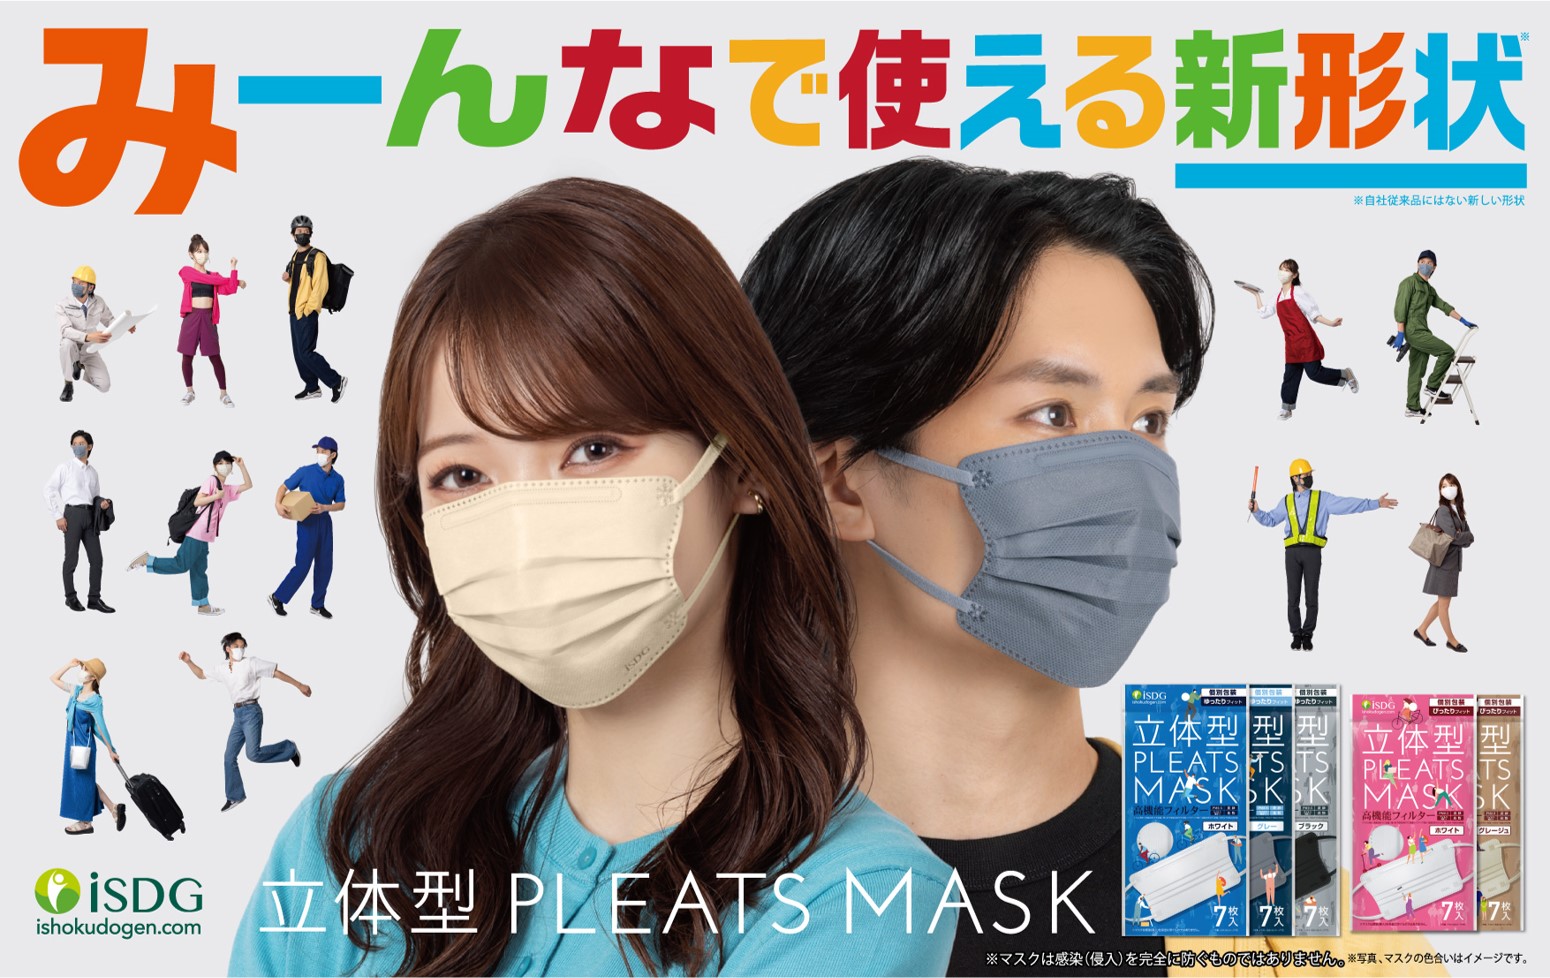 iSDGマスクの新常識。 プリーツ型マスクと立体型マスクの良いところ